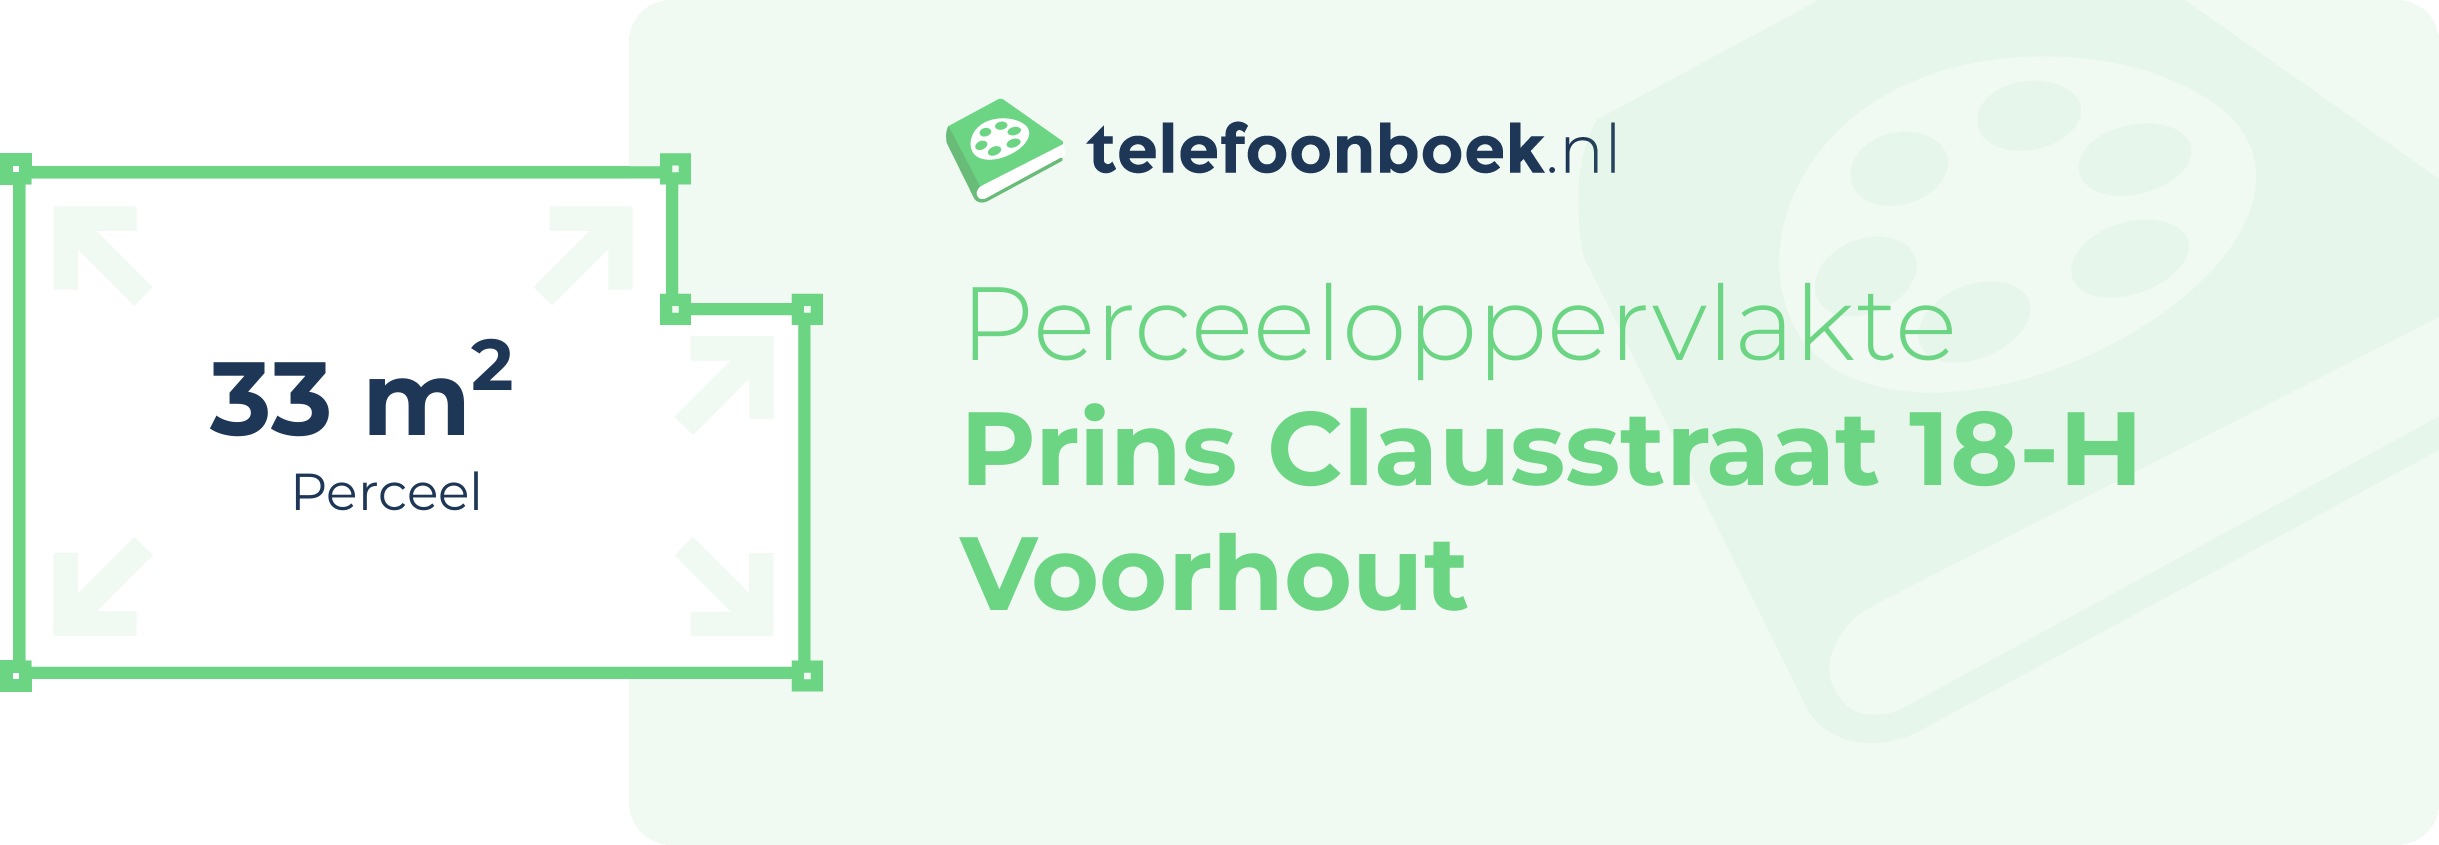 Perceeloppervlakte Prins Clausstraat 18-H Voorhout